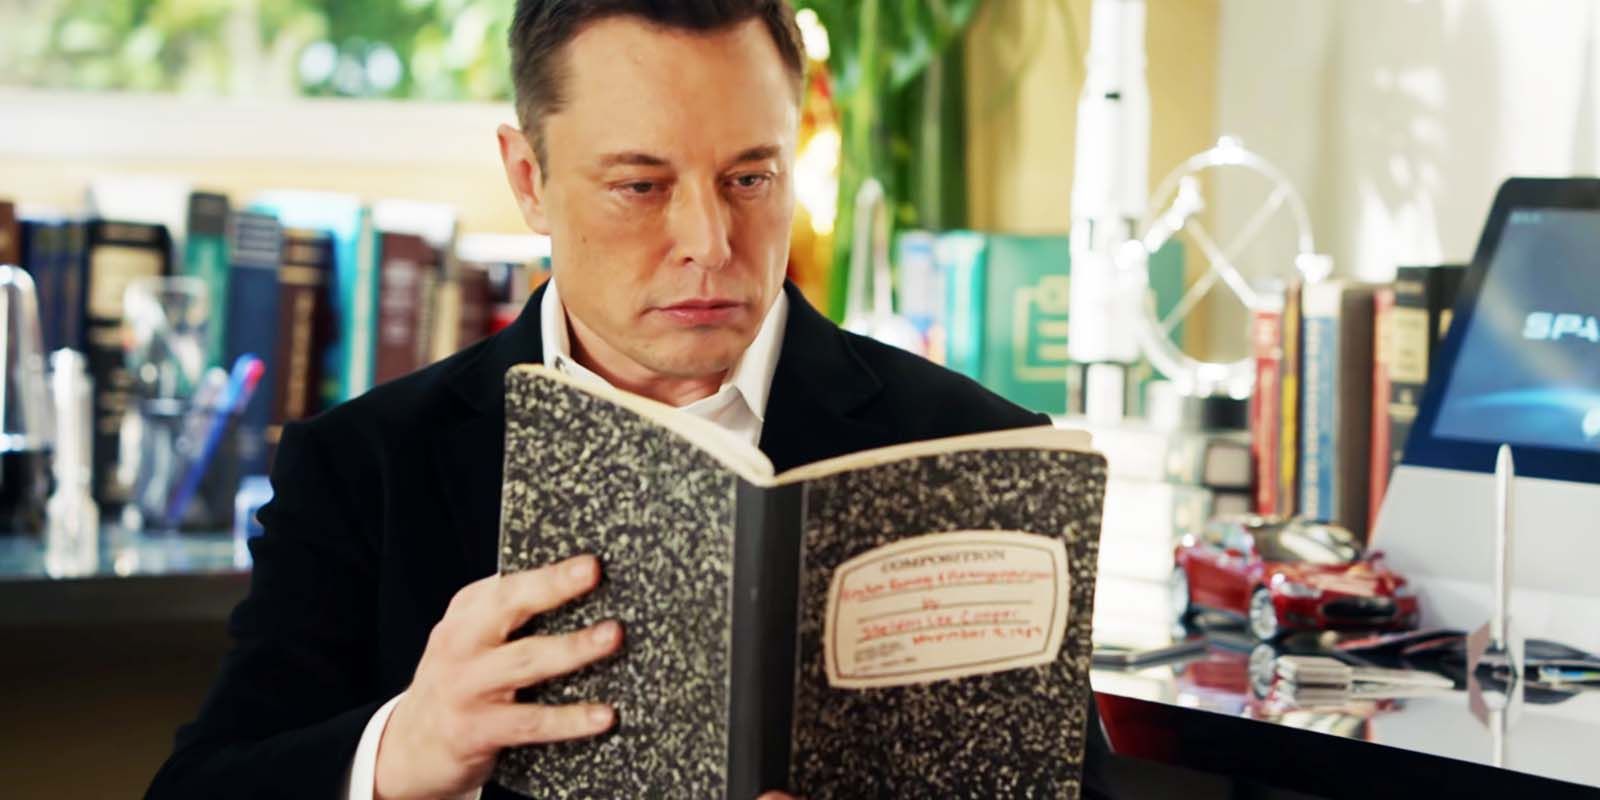 Elon Musk as himself in Young Sheldon season 1, episode 6